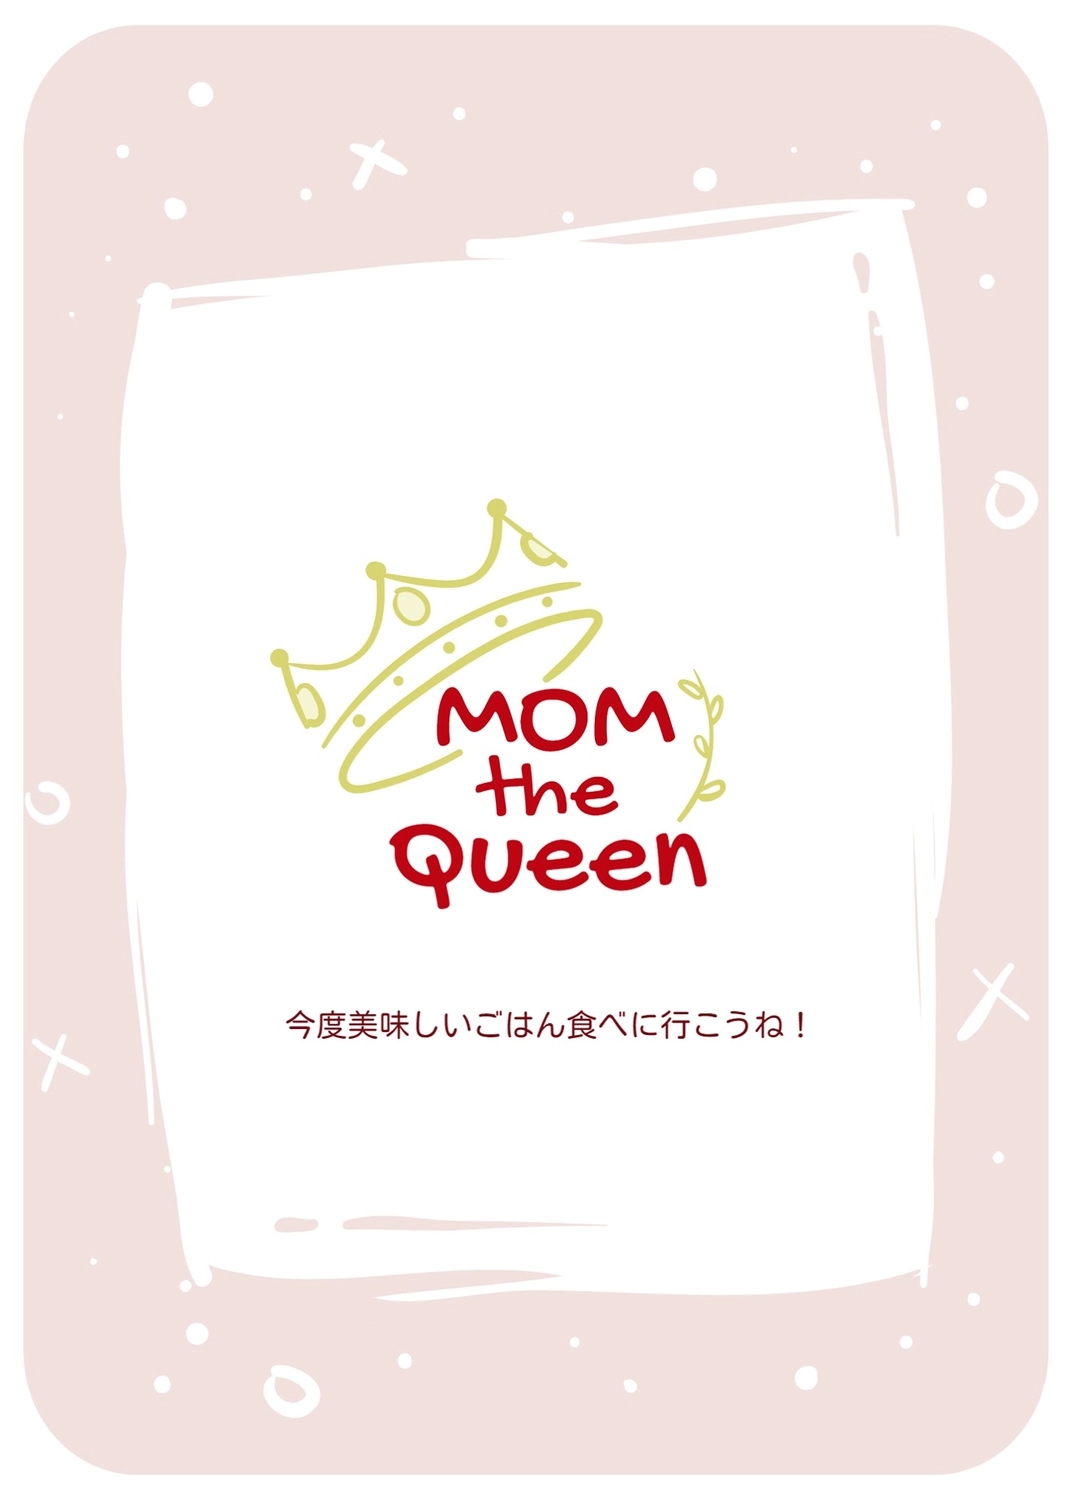 母の日グリーティングカード　王冠, 분홍색 바탕, 만들기, 디자인, 메시지 카드 템플릿